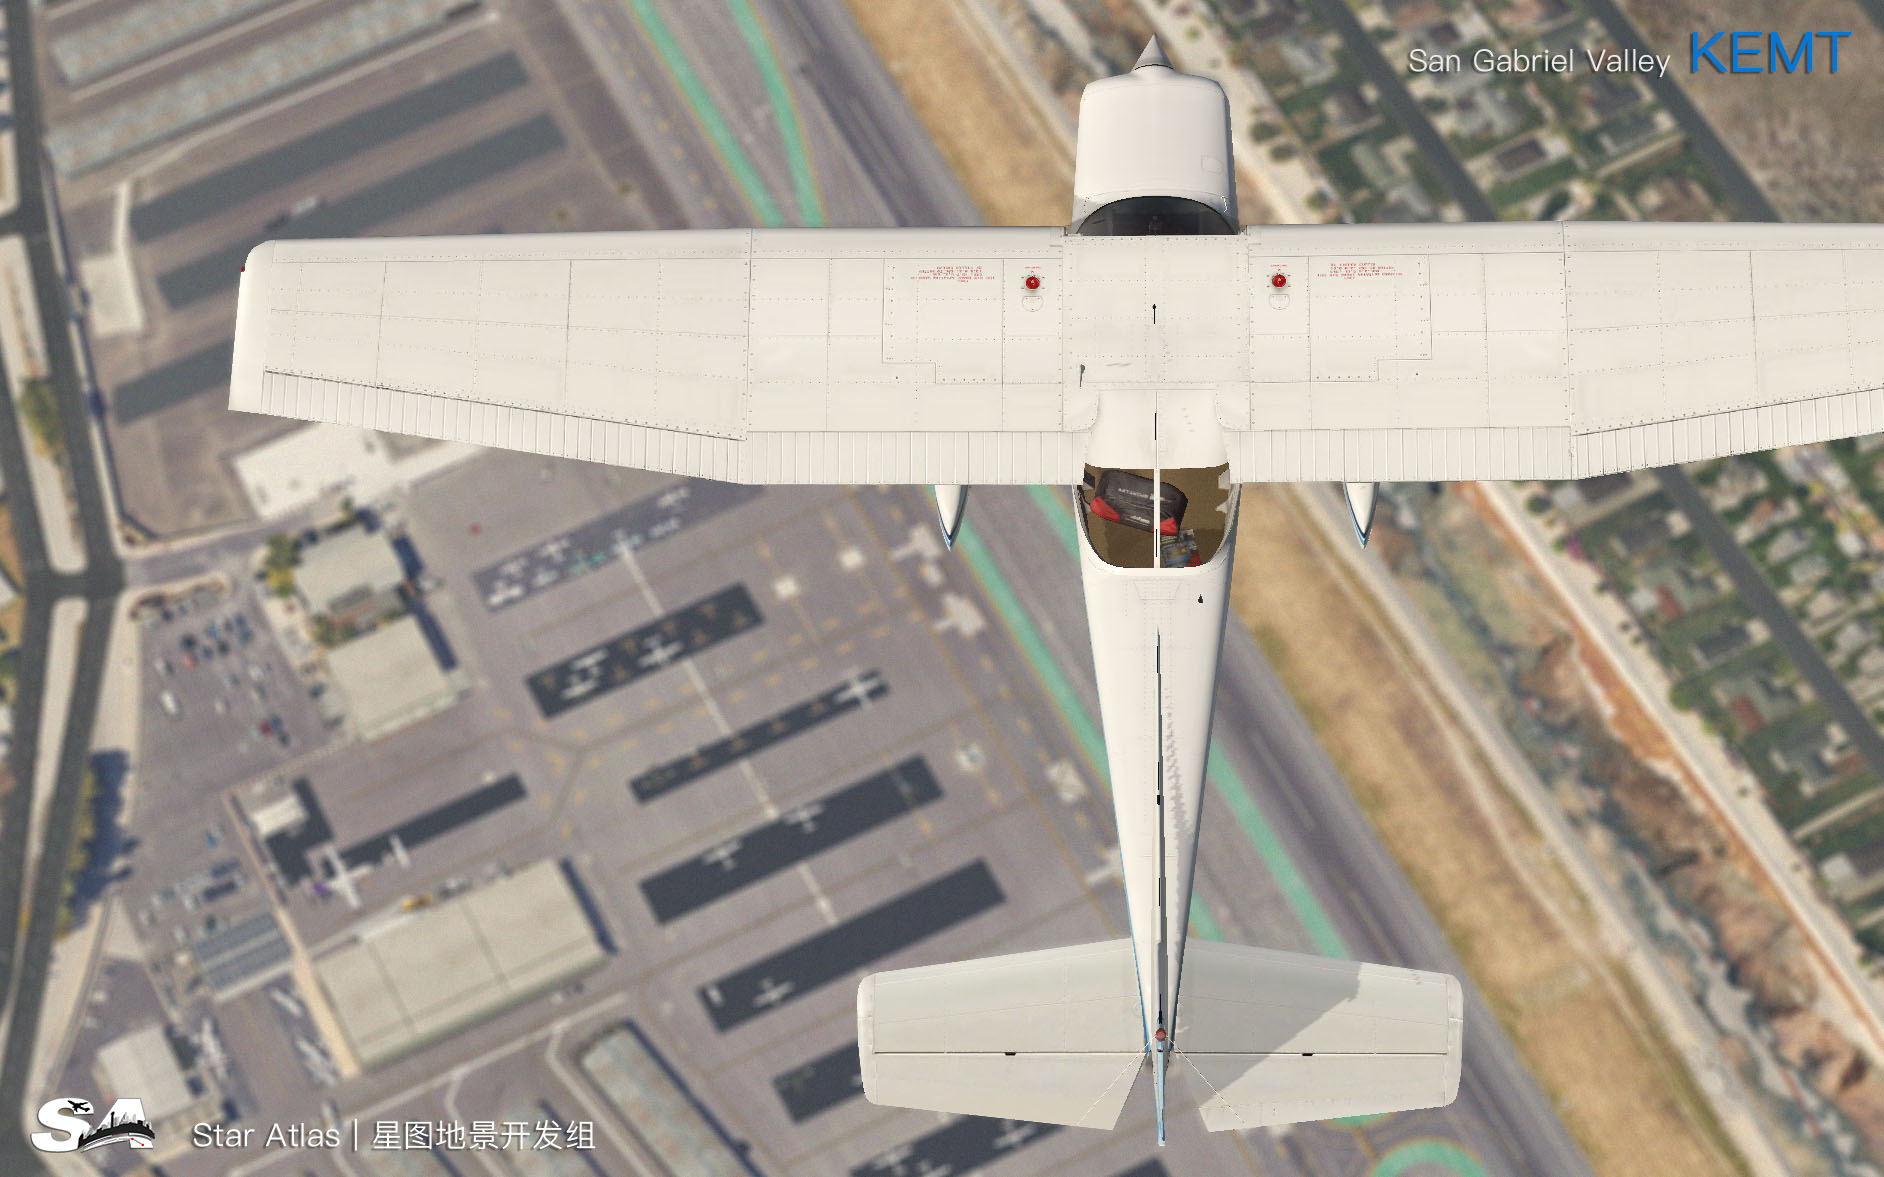 【X-Plane】KEMT-圣盖博谷机场 HD 1.0-8289 